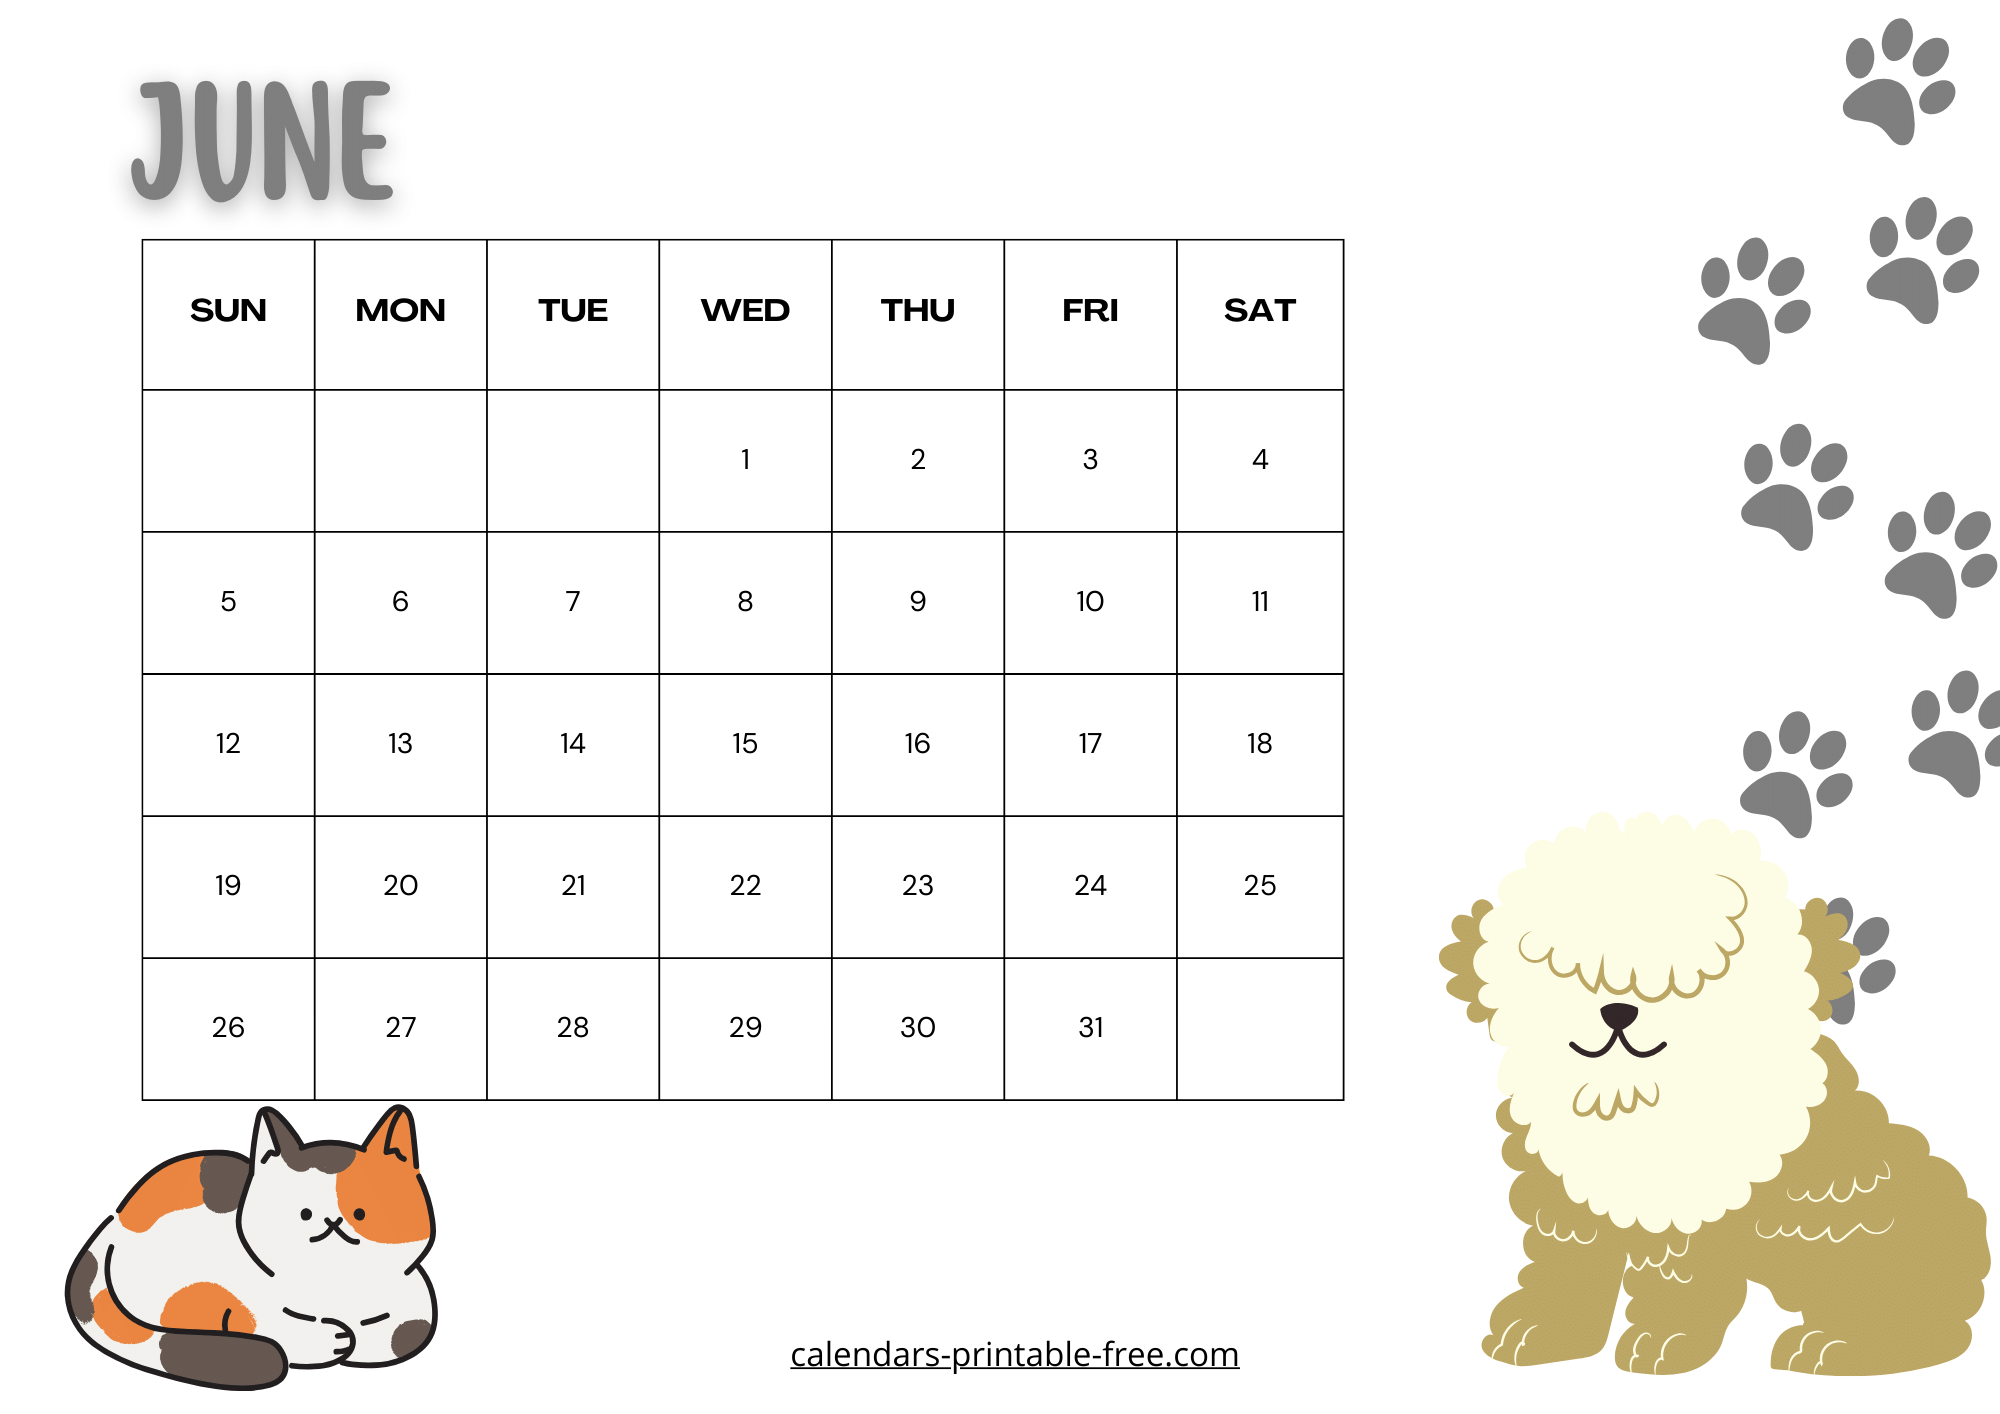 Cute June 2024 Calendar